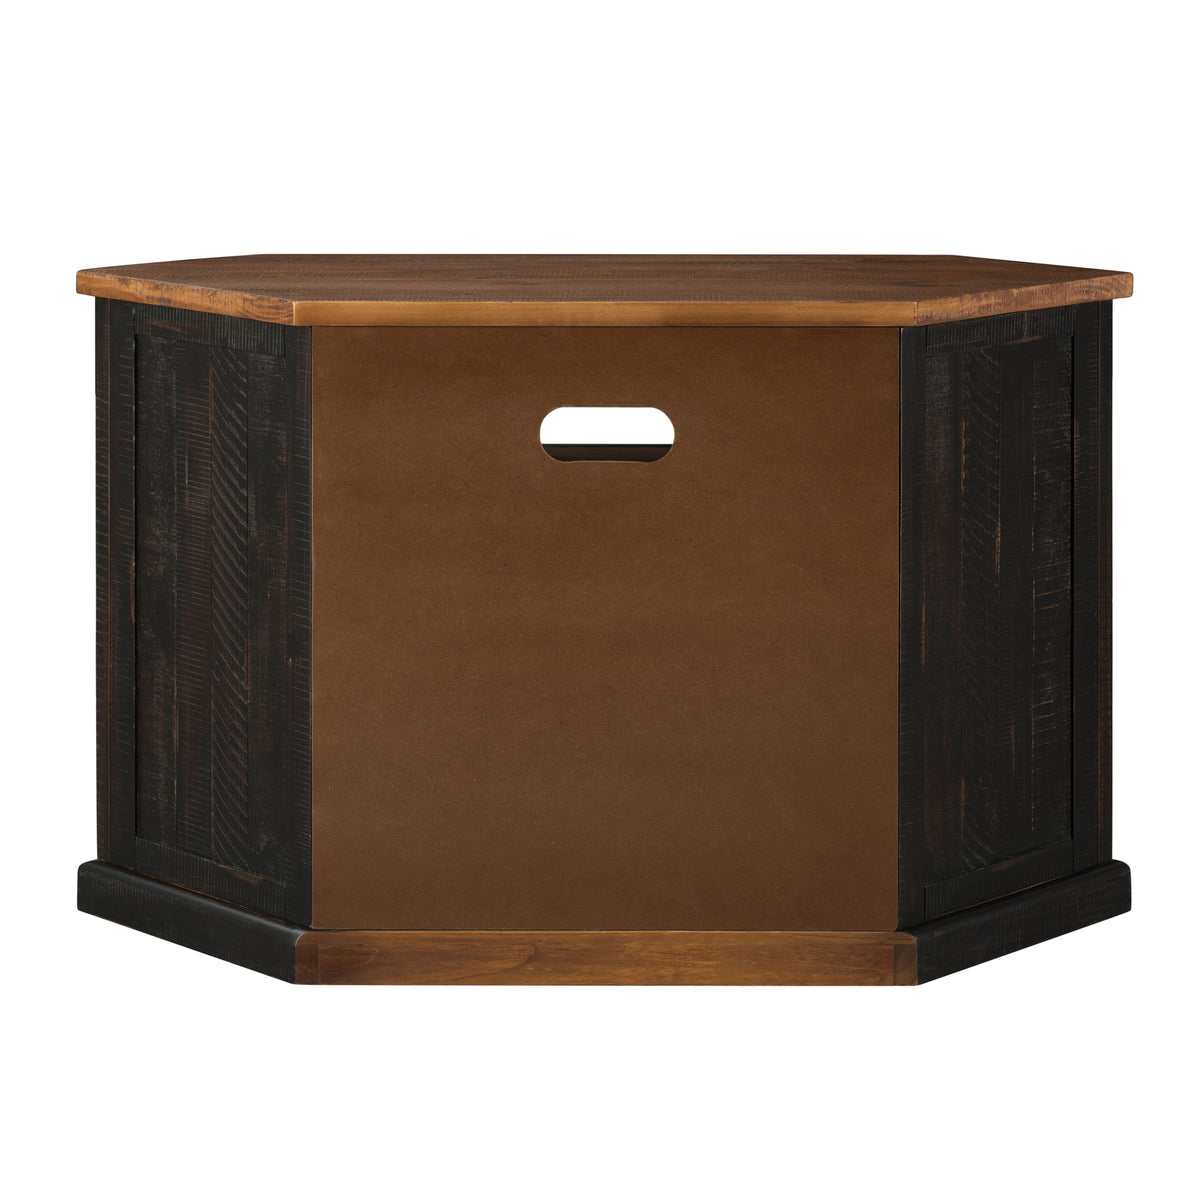 Rustic Style Wooden Corner TV Stand with 2 Door Cabinet, Brown - BM205999